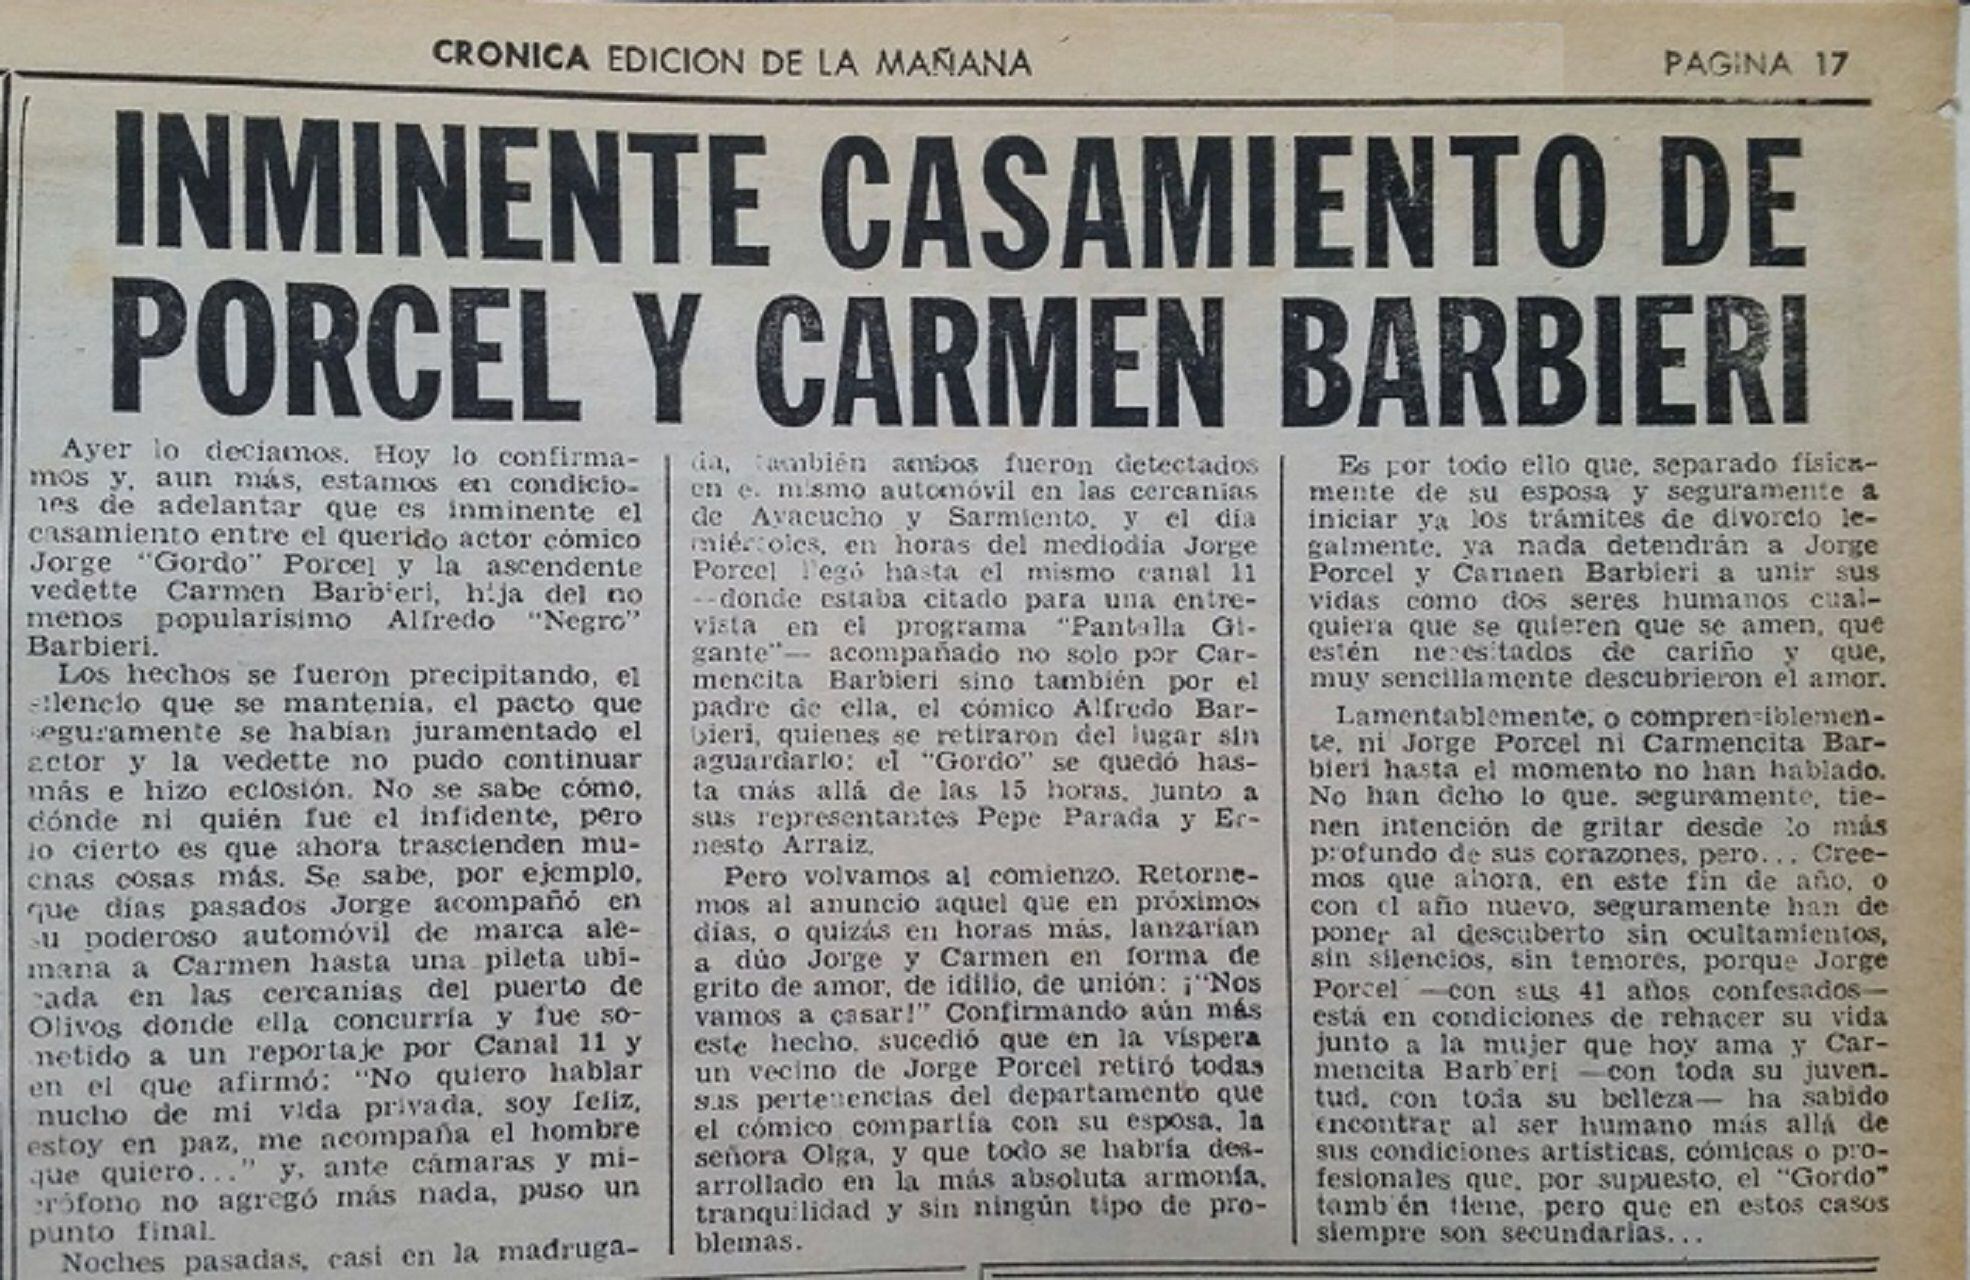 El día que Crónica anunciaba en el diario el "inminente casamiento entre Jorge Porcel y Carmen Barbieri"